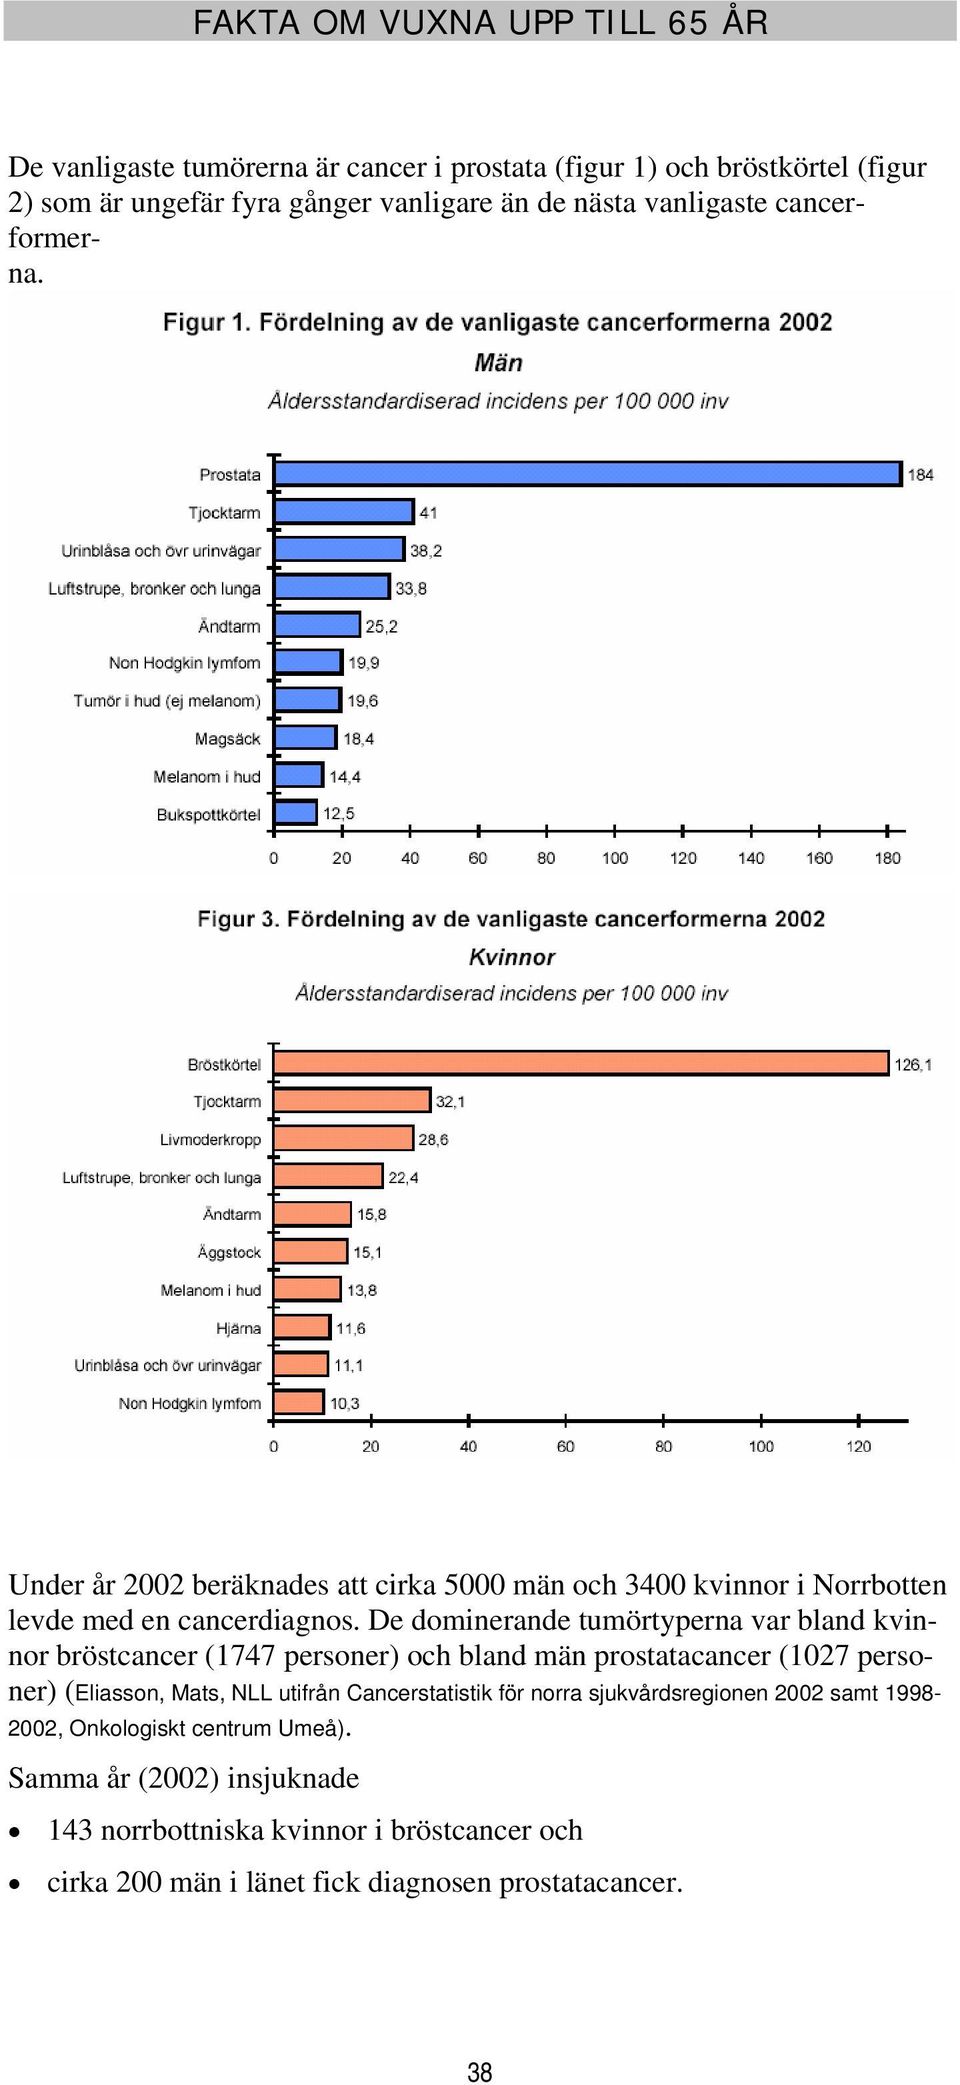 De dominerande tumörtyperna var bland kvinnor bröstcancer (1747 personer) och bland män prostatacancer (127 personer) (Eliasson, Mats, NLL utifrån